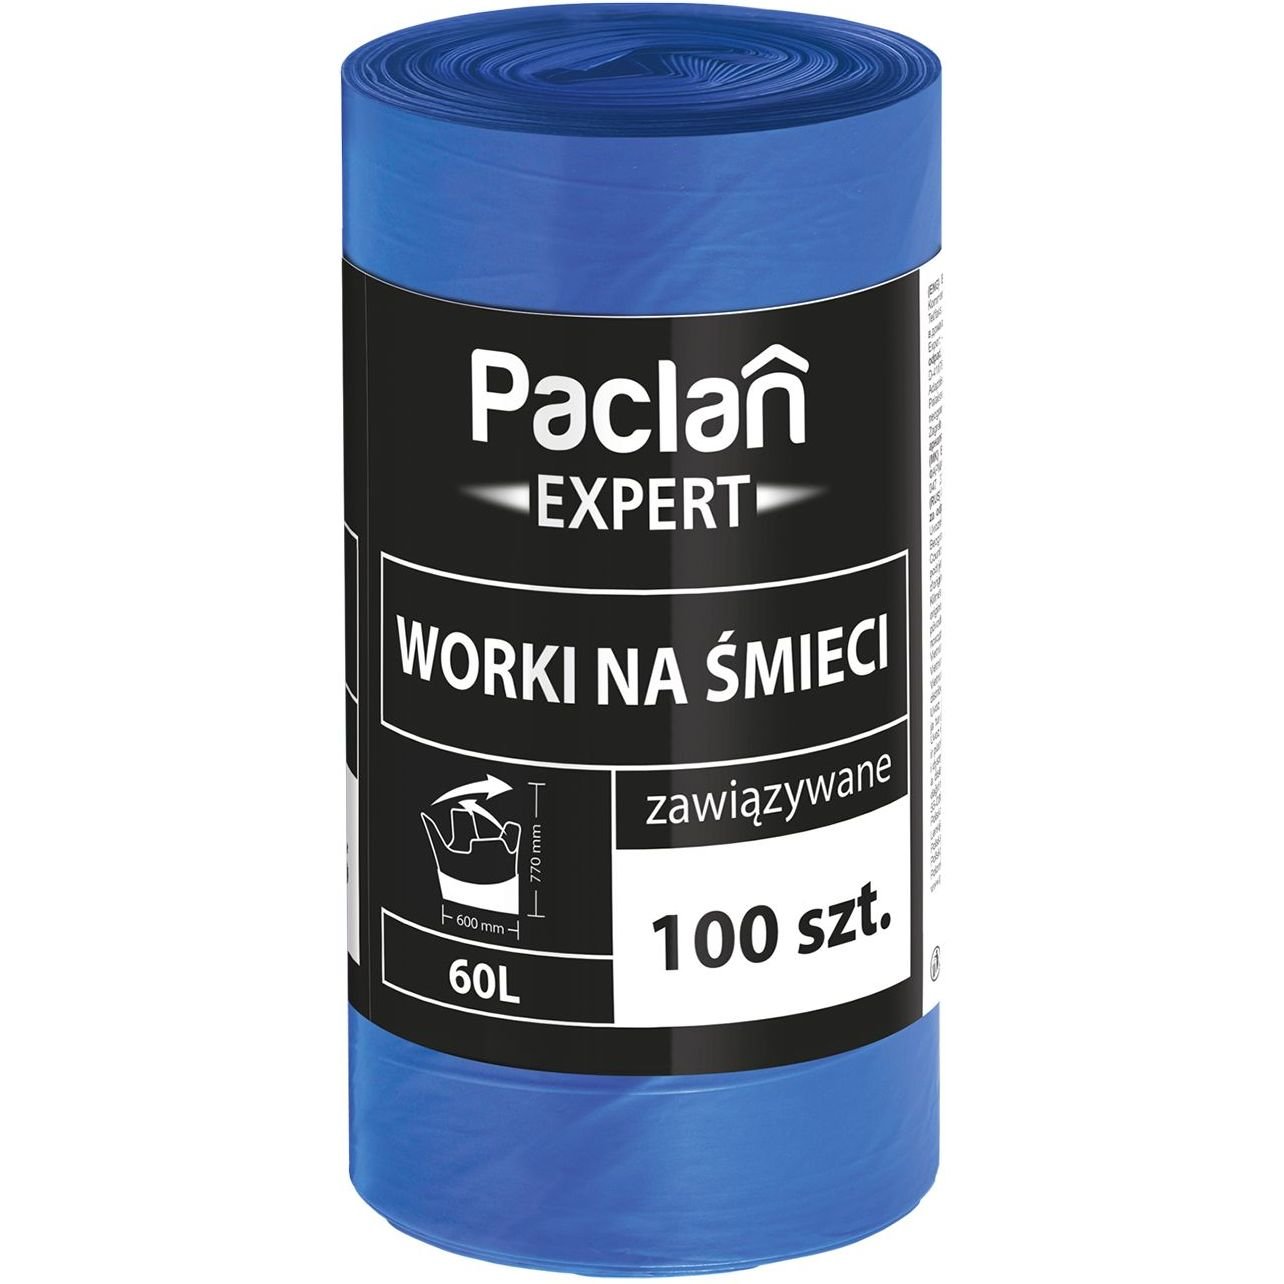 Пакети для сміття Paclan Expert MultiTop, 60 л, 100 шт. - фото 1